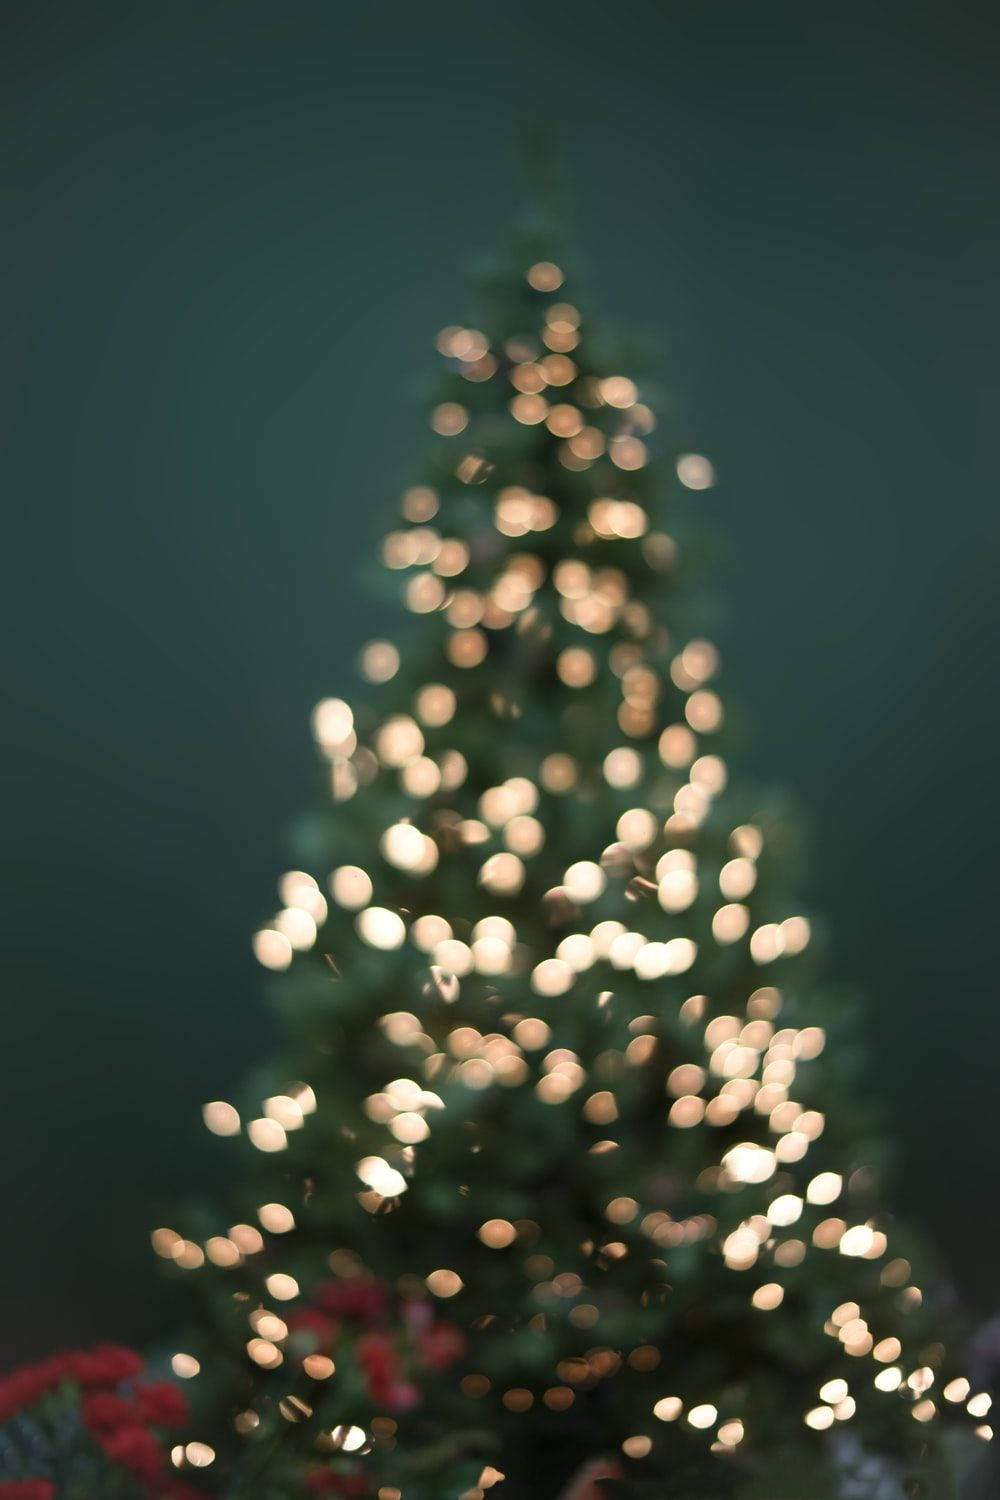 Festlicheweihnachtsbeleuchtung Auf Dem Weihnachtsbaum Im Bokeh-stil Wallpaper